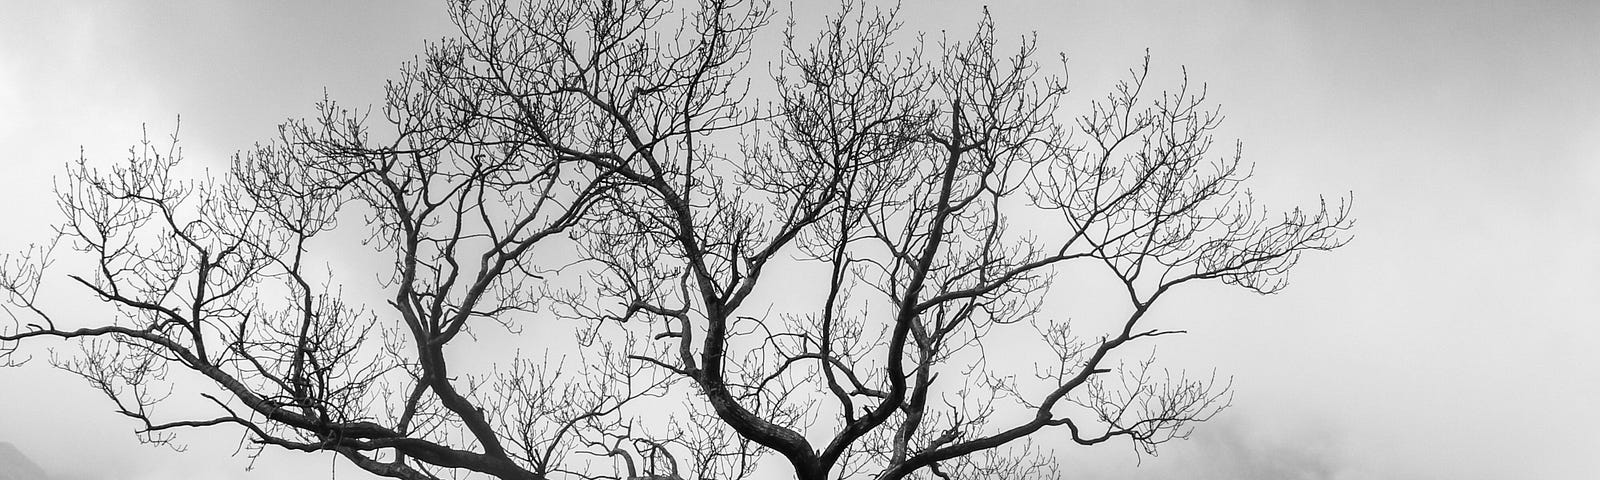 A tree in winter.